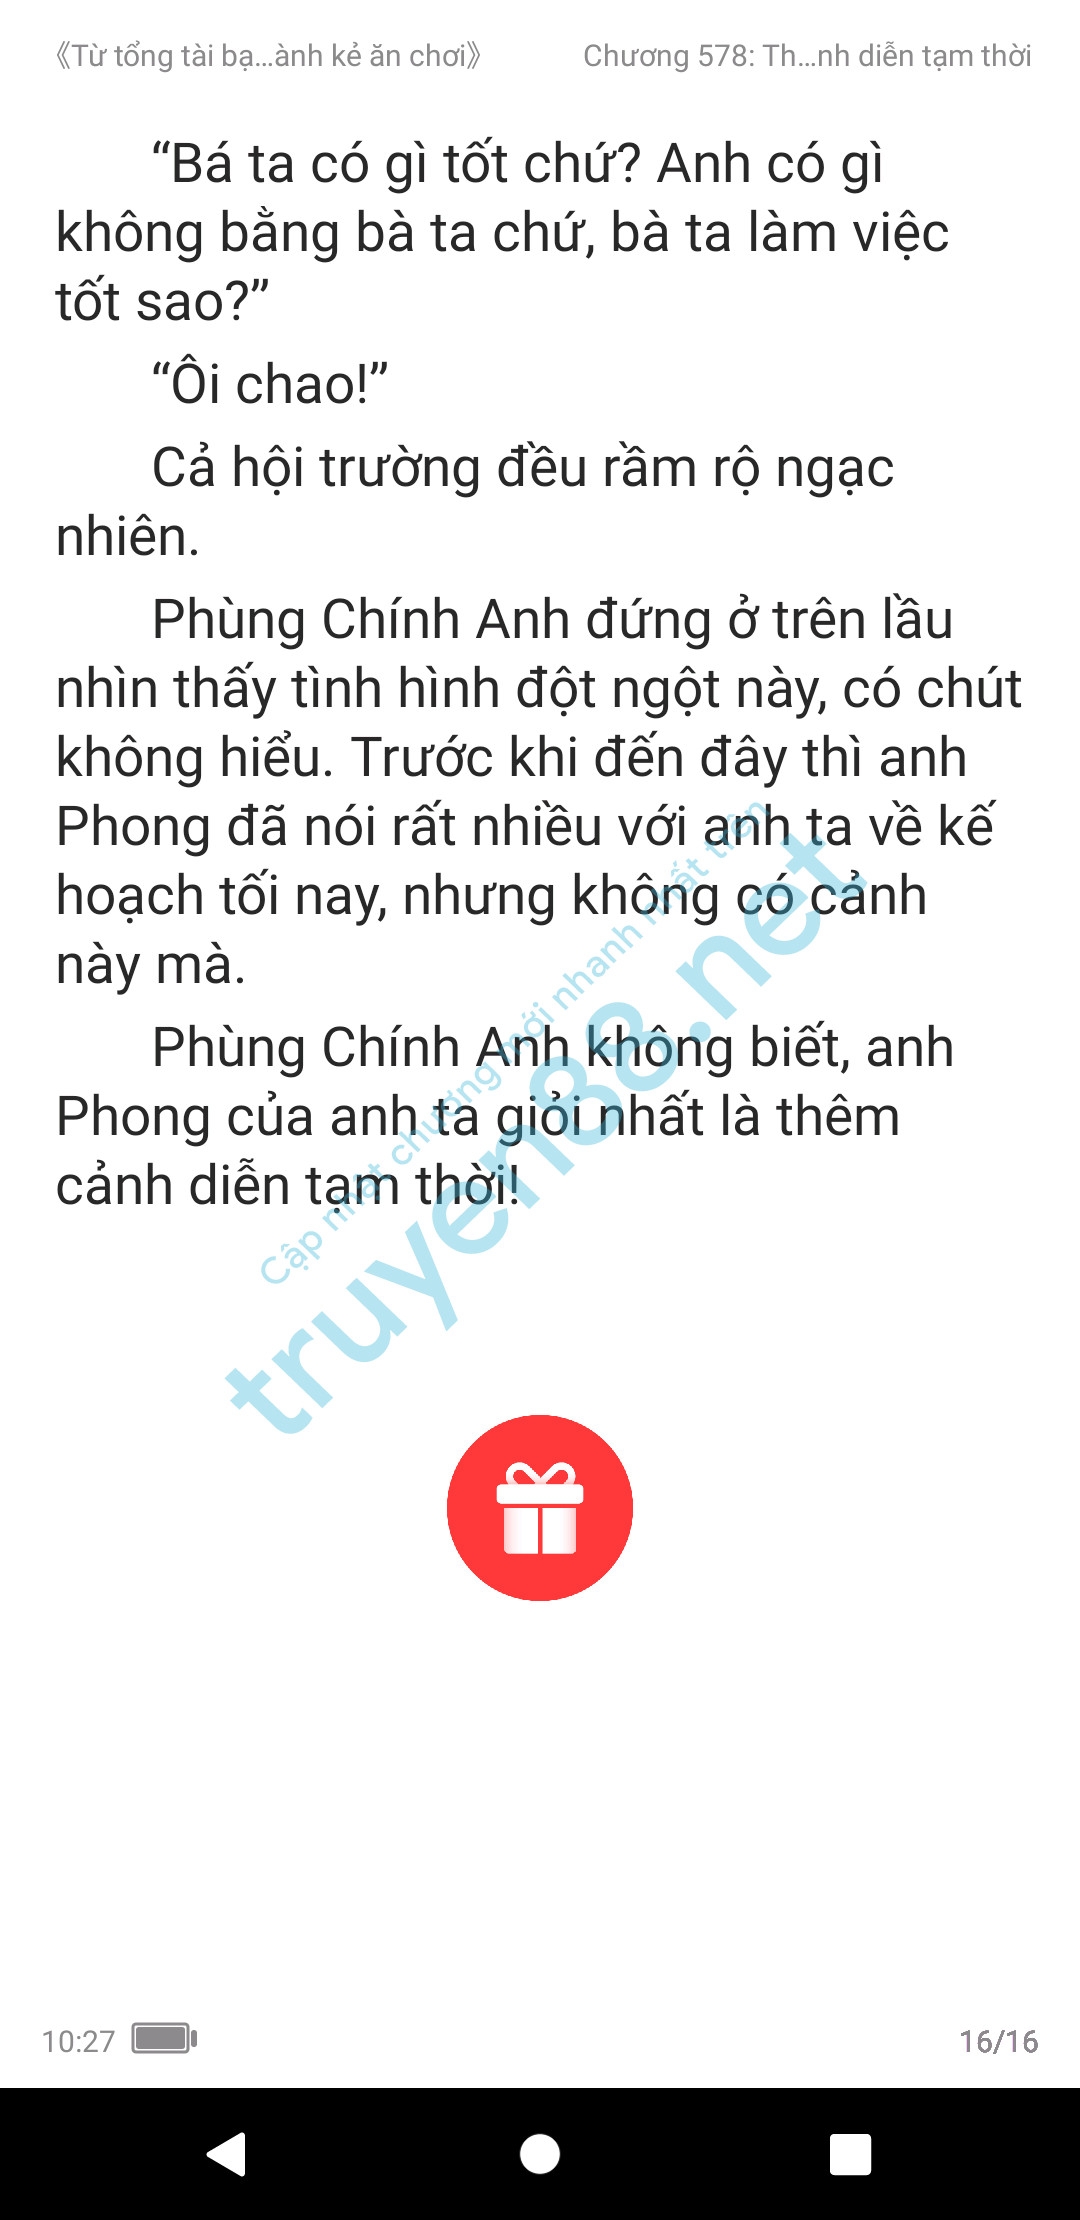 ke-an-choi-bien-tong-tai-578-2